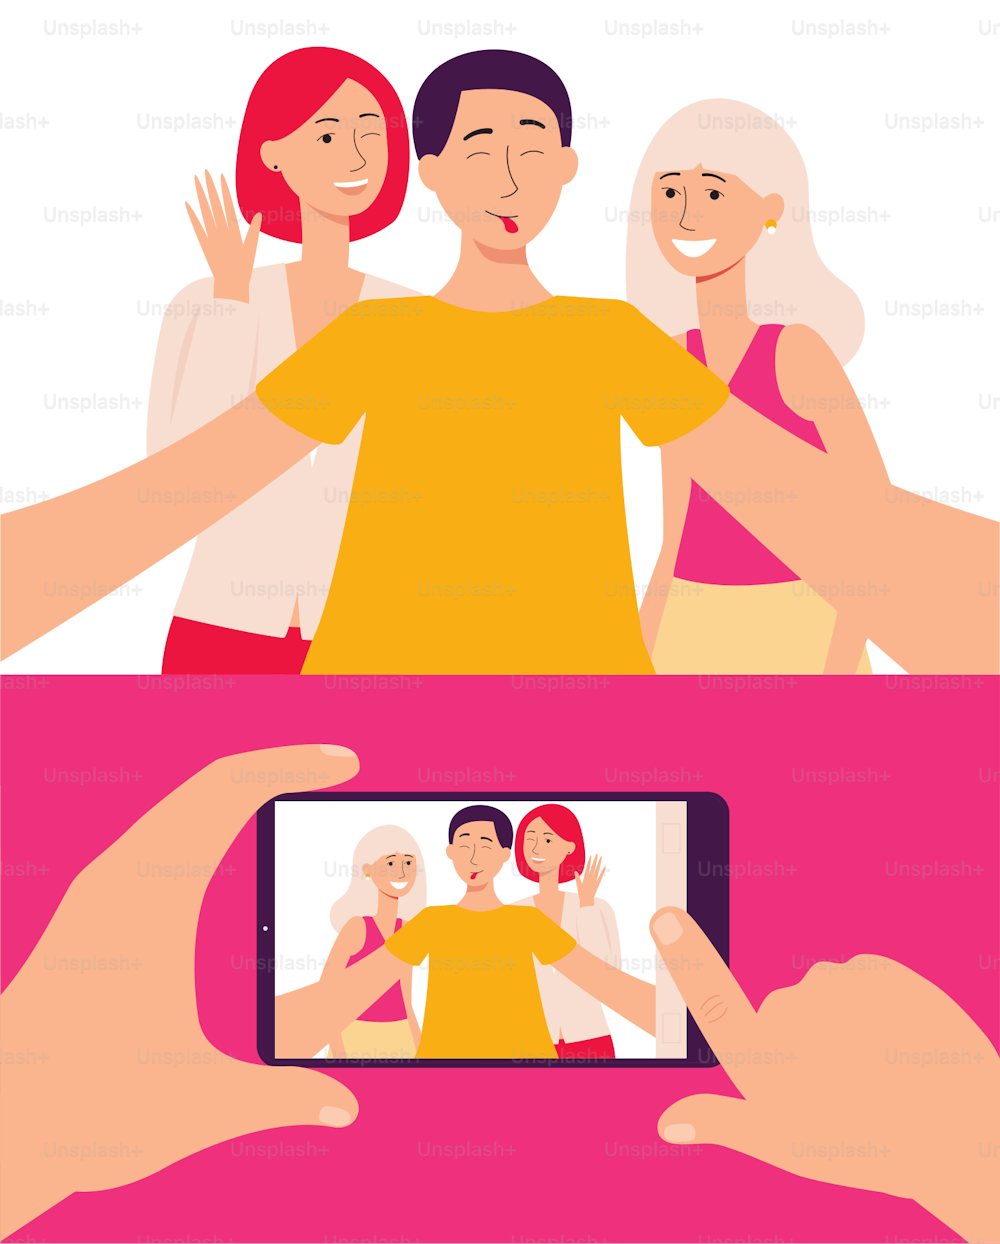 스마트폰 화면에는 친구들과 셀카를 찍고 있는 젊은이들의 사진이 플랫 벡터 일러스트레이션이다. 통신 모바일 기술과 현대적인 라이프스타일 개념.